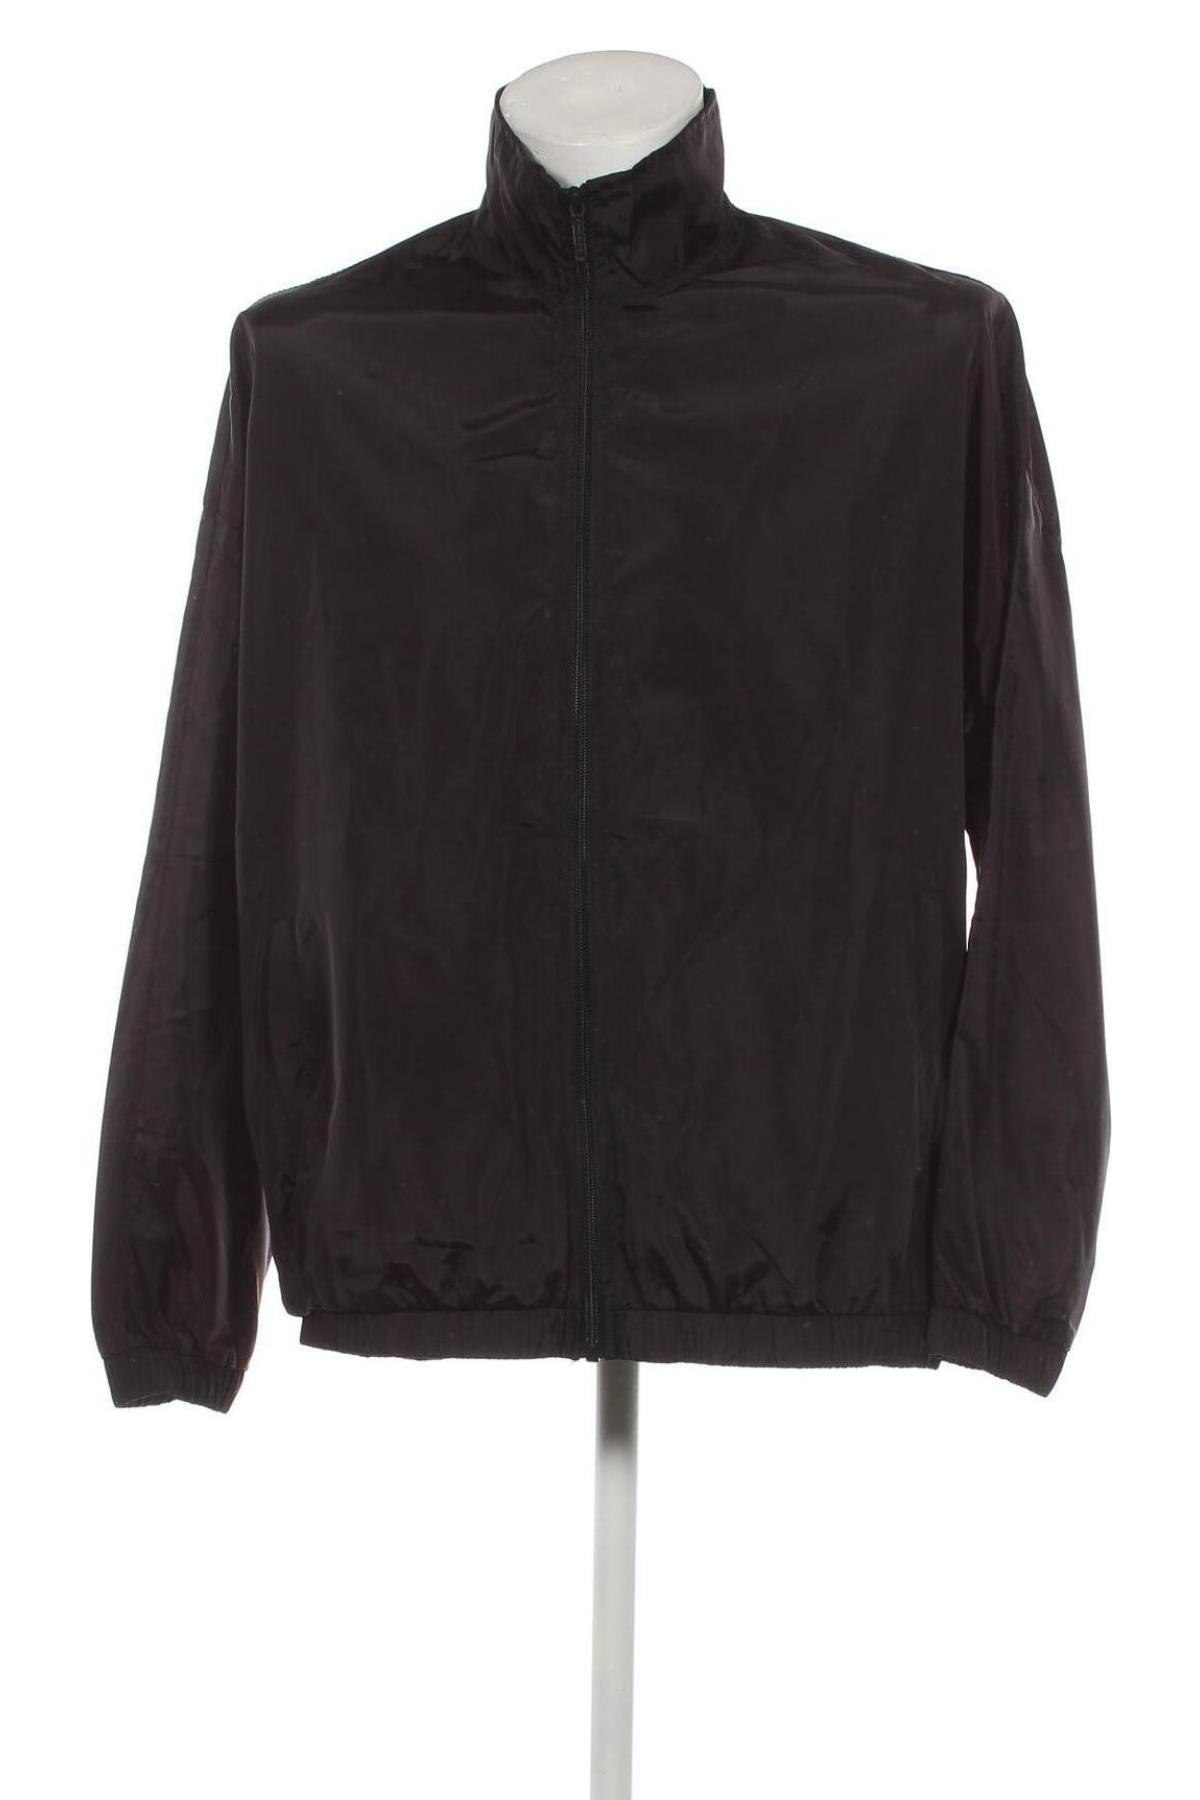 Ανδρικό μπουφάν NIGHT ADDICT, Μέγεθος XL, Χρώμα Μαύρο, Τιμή 14,30 €